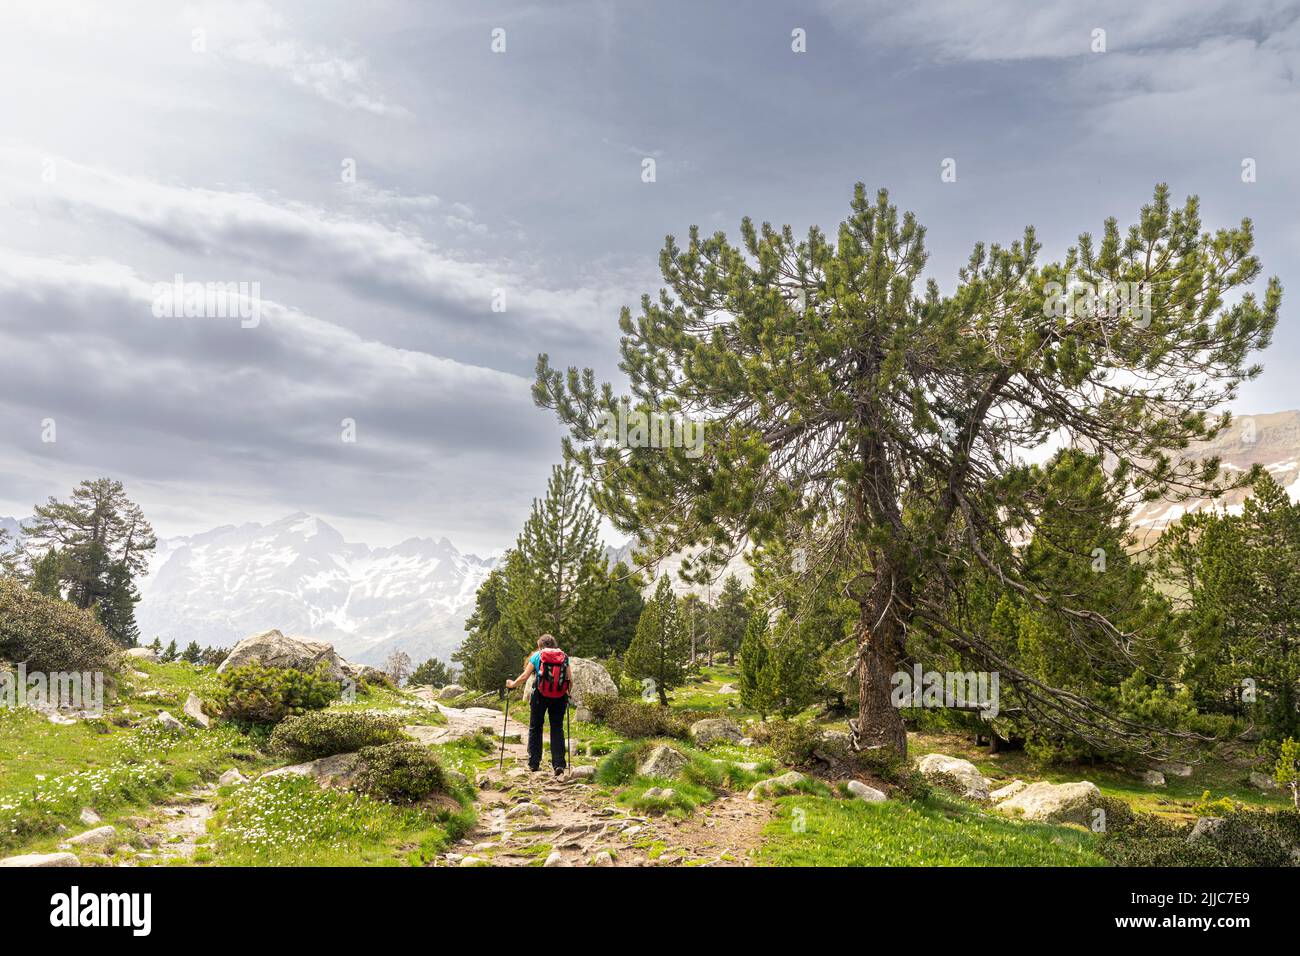 Hiking towards Plan de Aiguallut, Valle de Benasque, Natural Park of Posets-Maladeta, Huesca, Spain Stock Photo